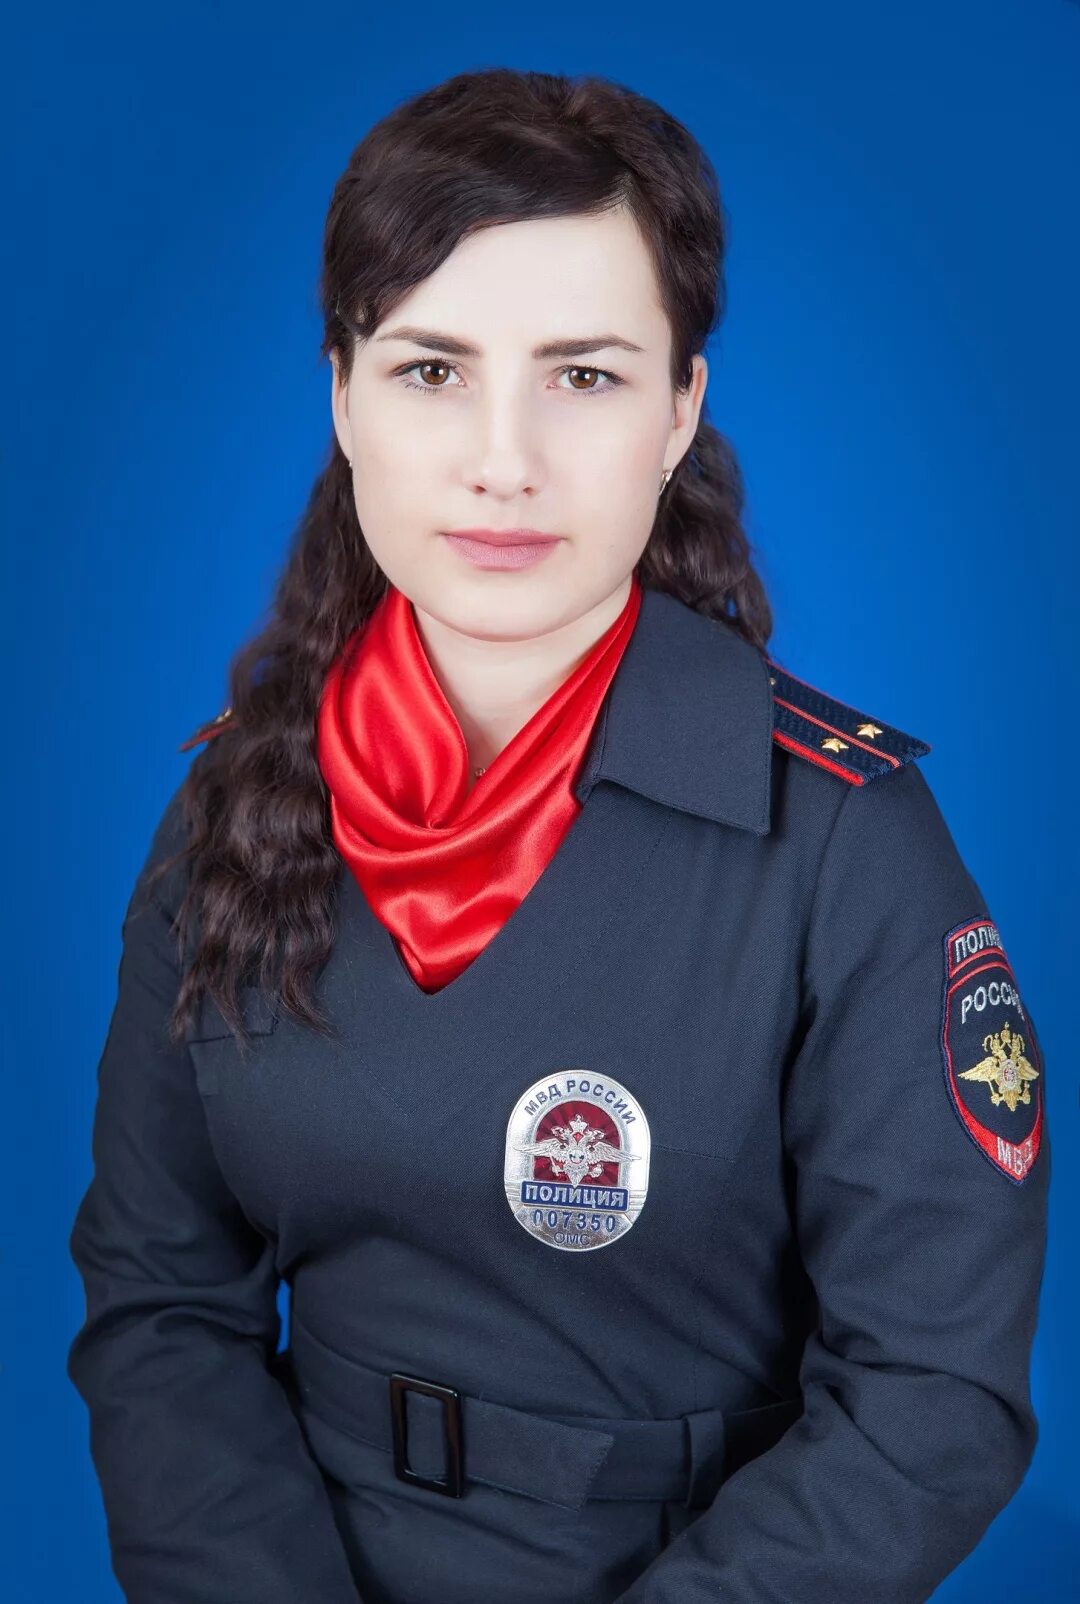 Женщина сержант. Леди Омская полиция 2019. Девушка полицейский. Девушка сержант полиции.